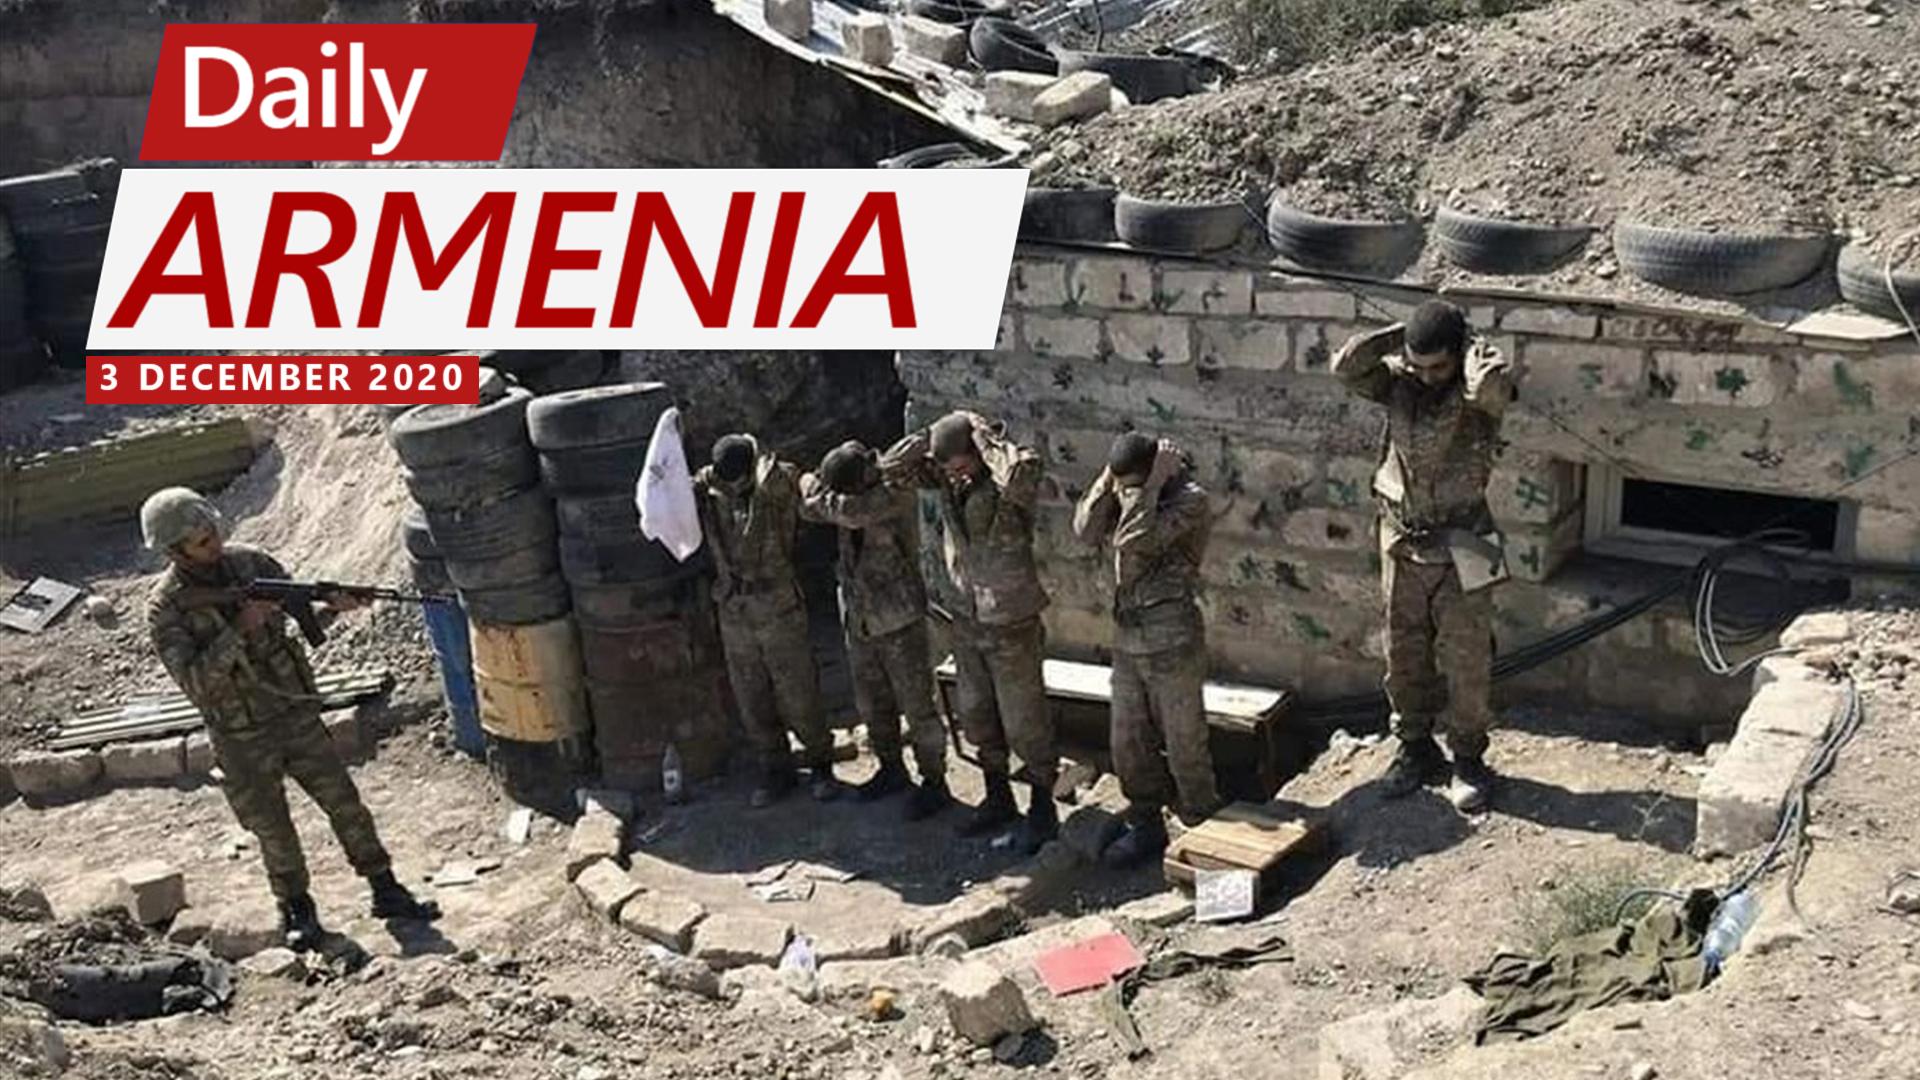 HRW Calls on Azerbaijan “To End Inhumane Treatment” of Armenian POWs